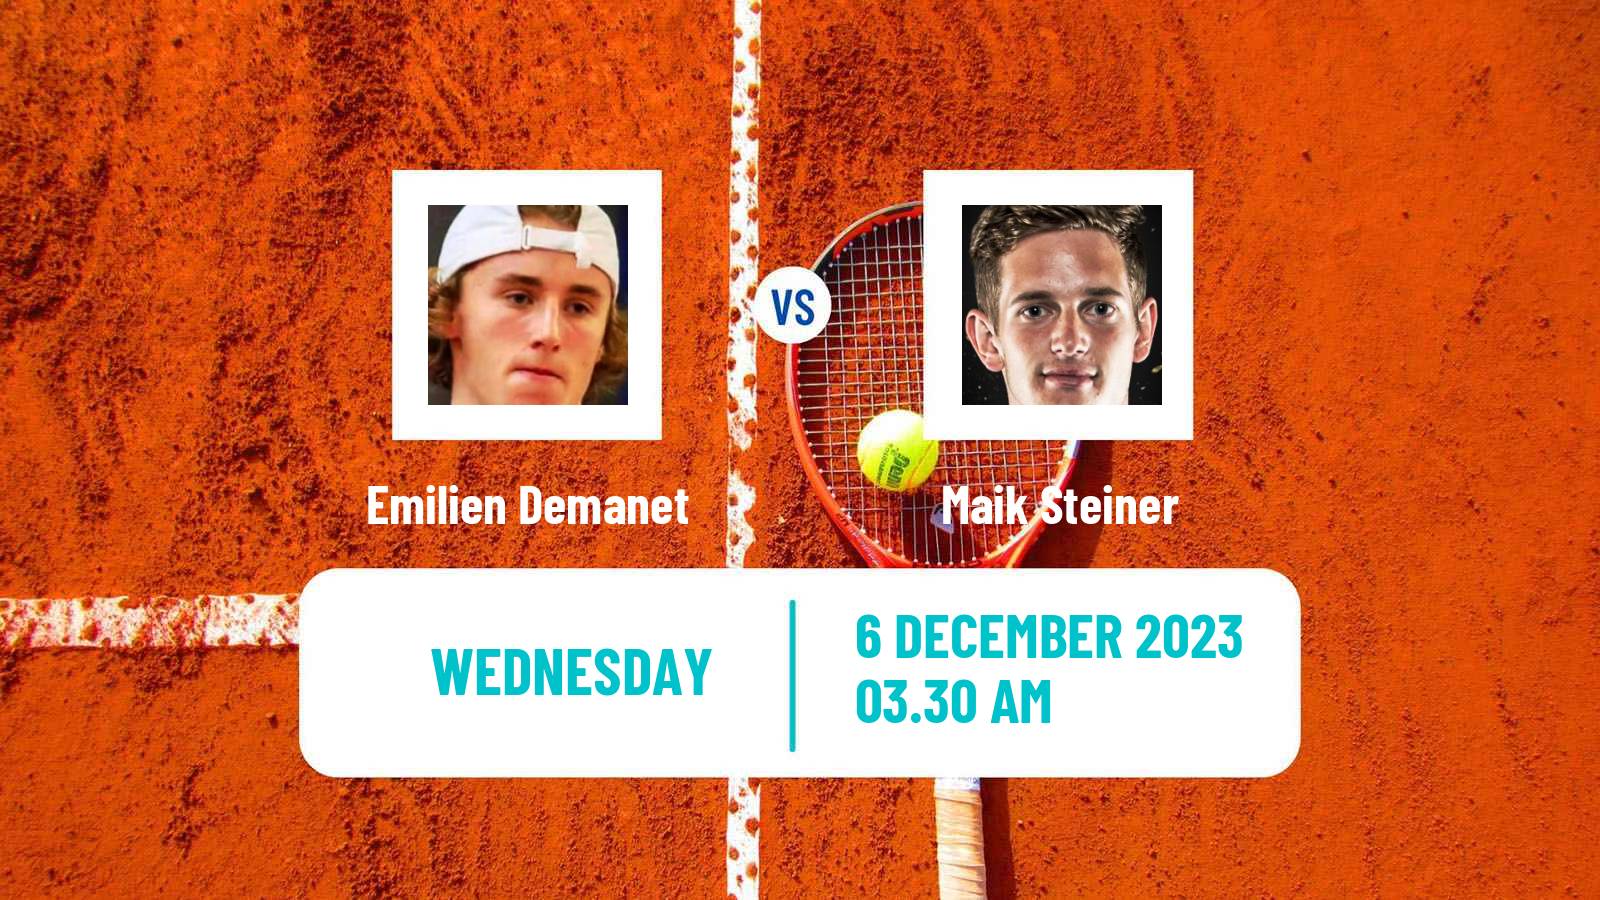 Tennis ITF M15 Zahra 2 Men 2023 Emilien Demanet - Maik Steiner